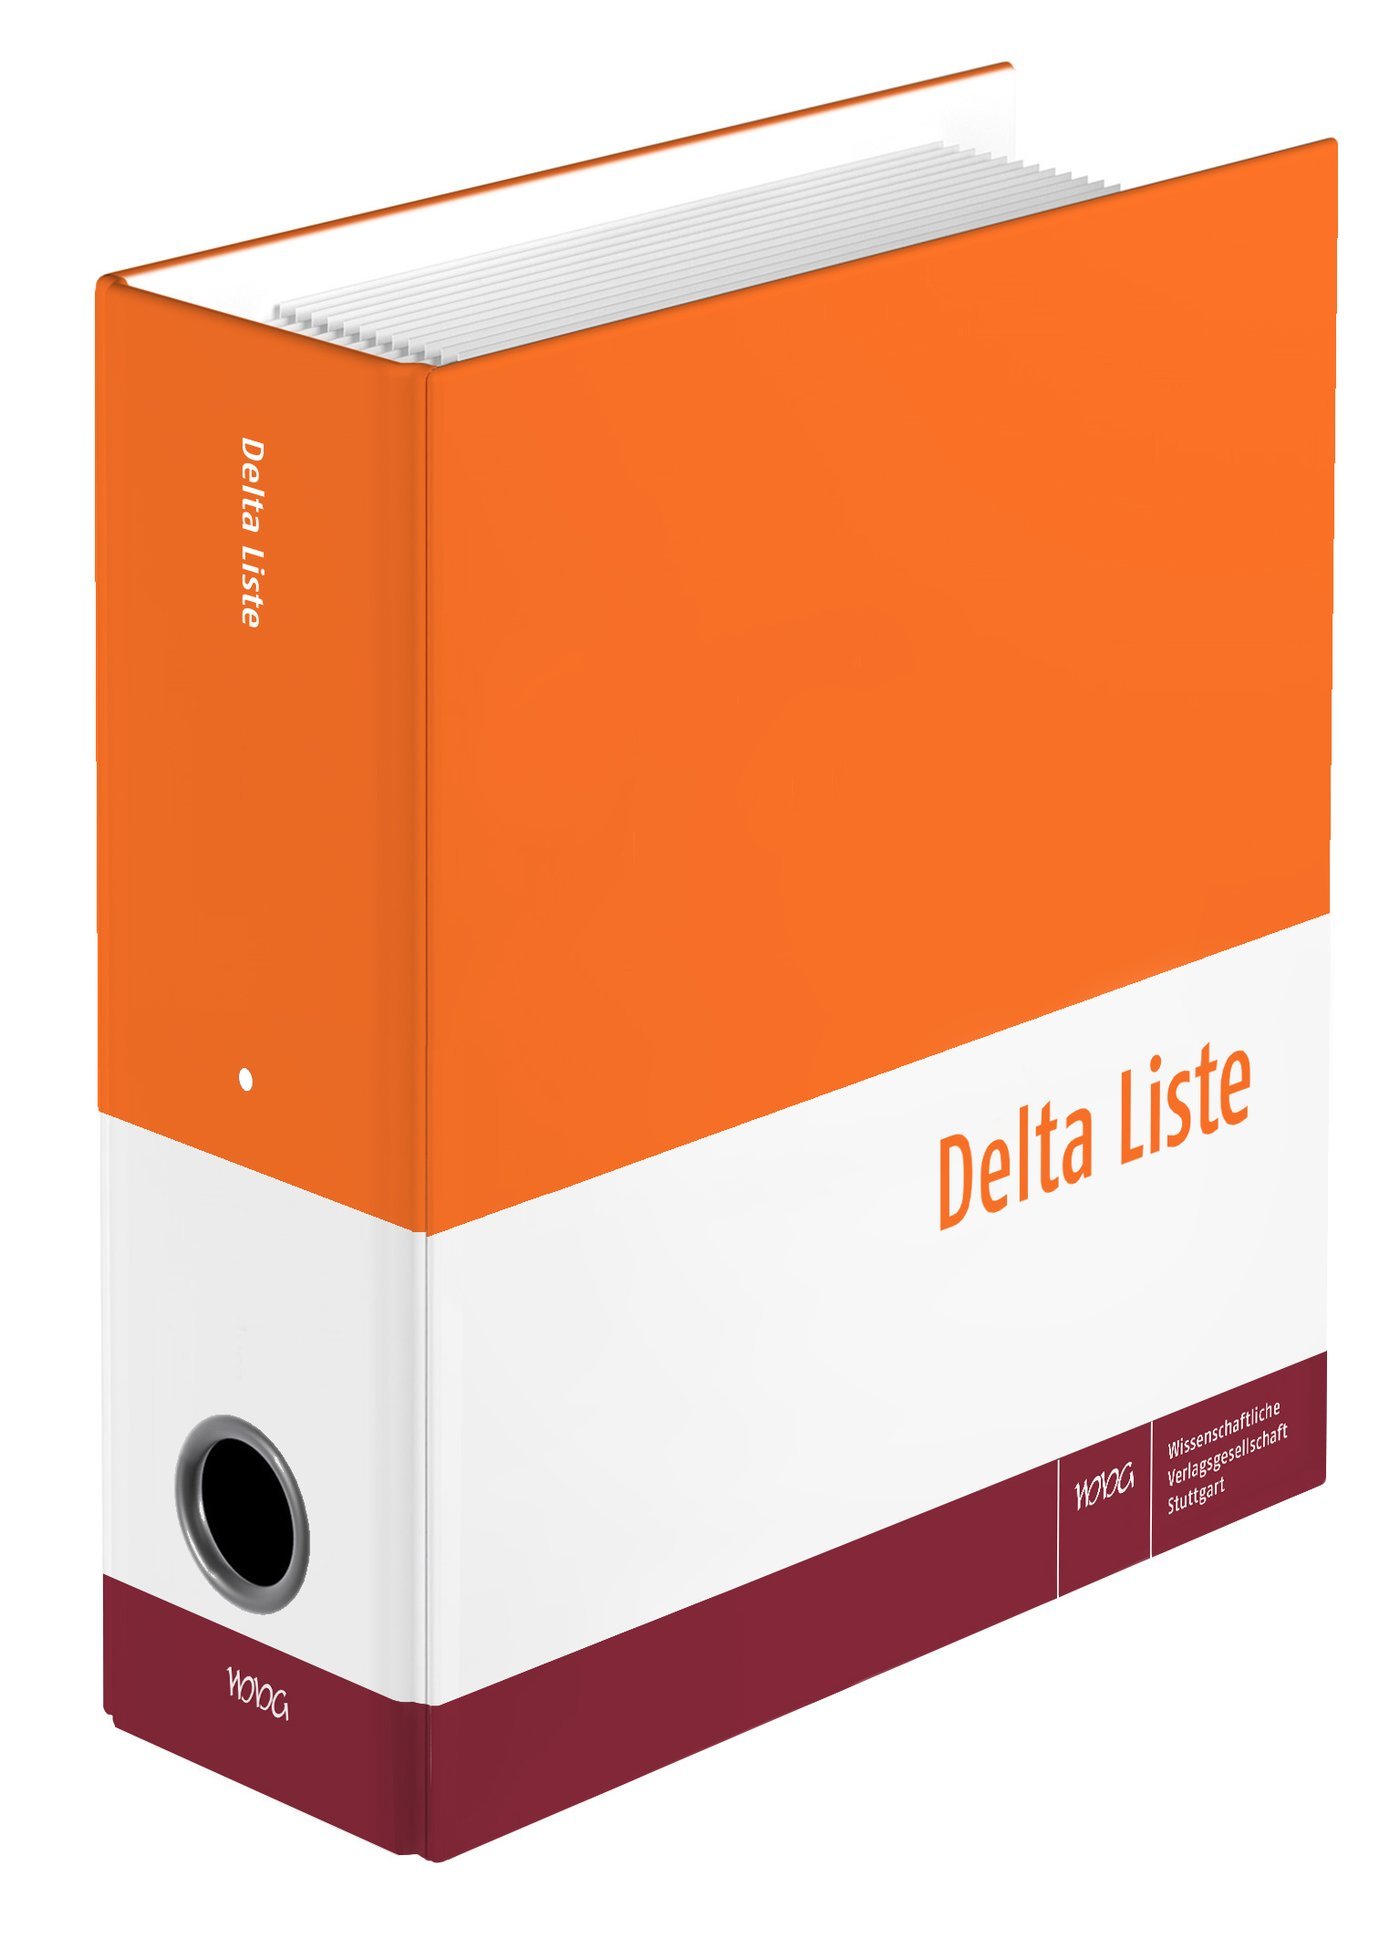 Delta Liste